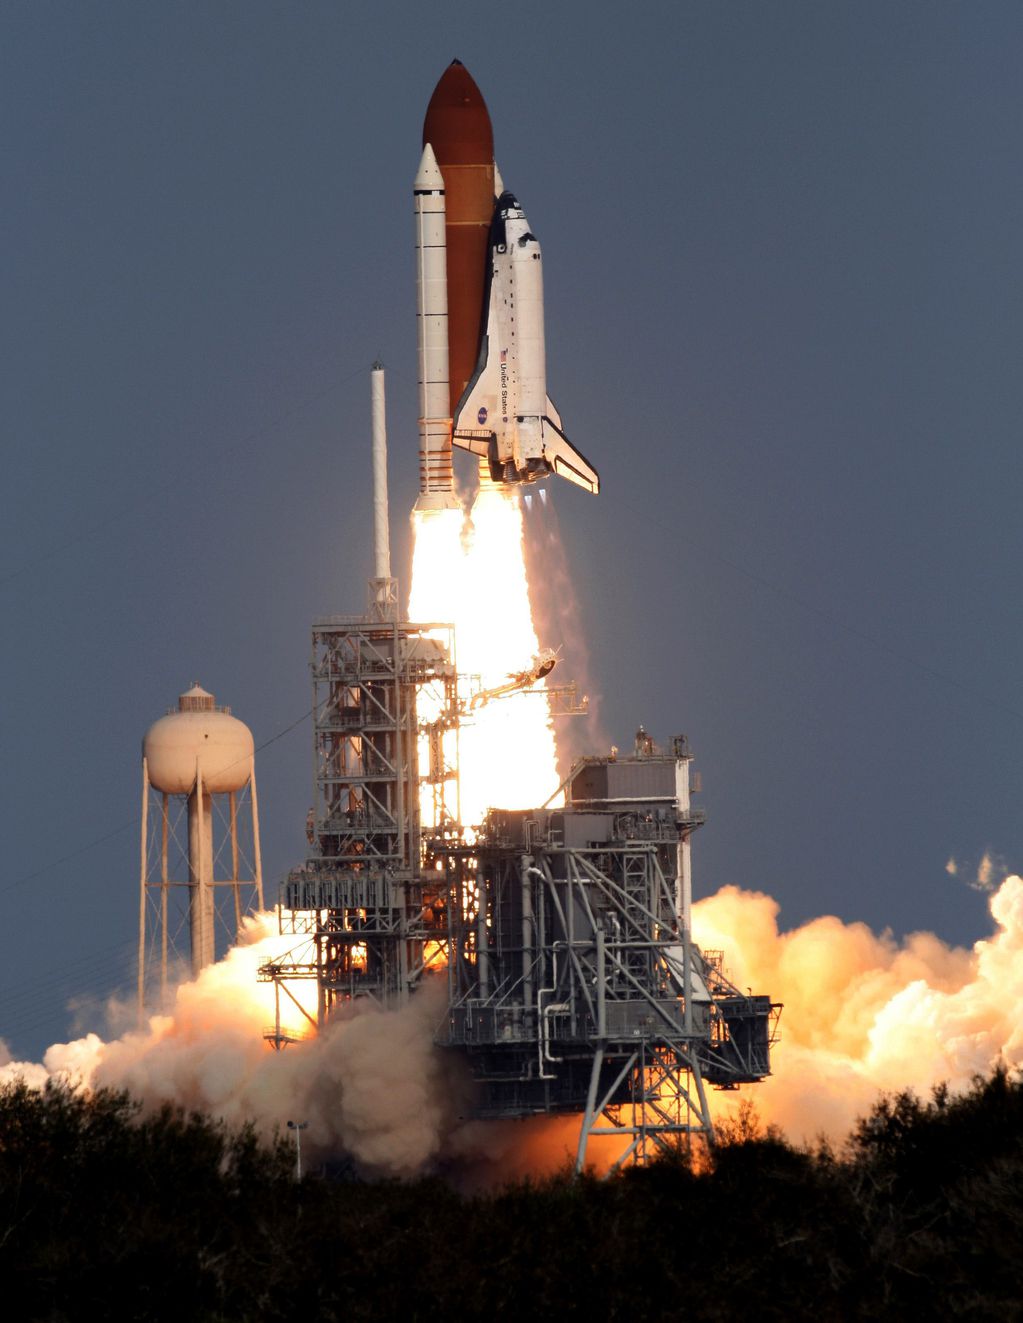 Los viejos transbordadores espaciales, dados de baja ya hace más de una década, utilizaban durante su lanzamiento los mismos cohetes blancos SRB (sigla de Solid Rocket Boosters, cohetes impulsores de combustible sólido) que son empleados ahora en el programa Artemisa.